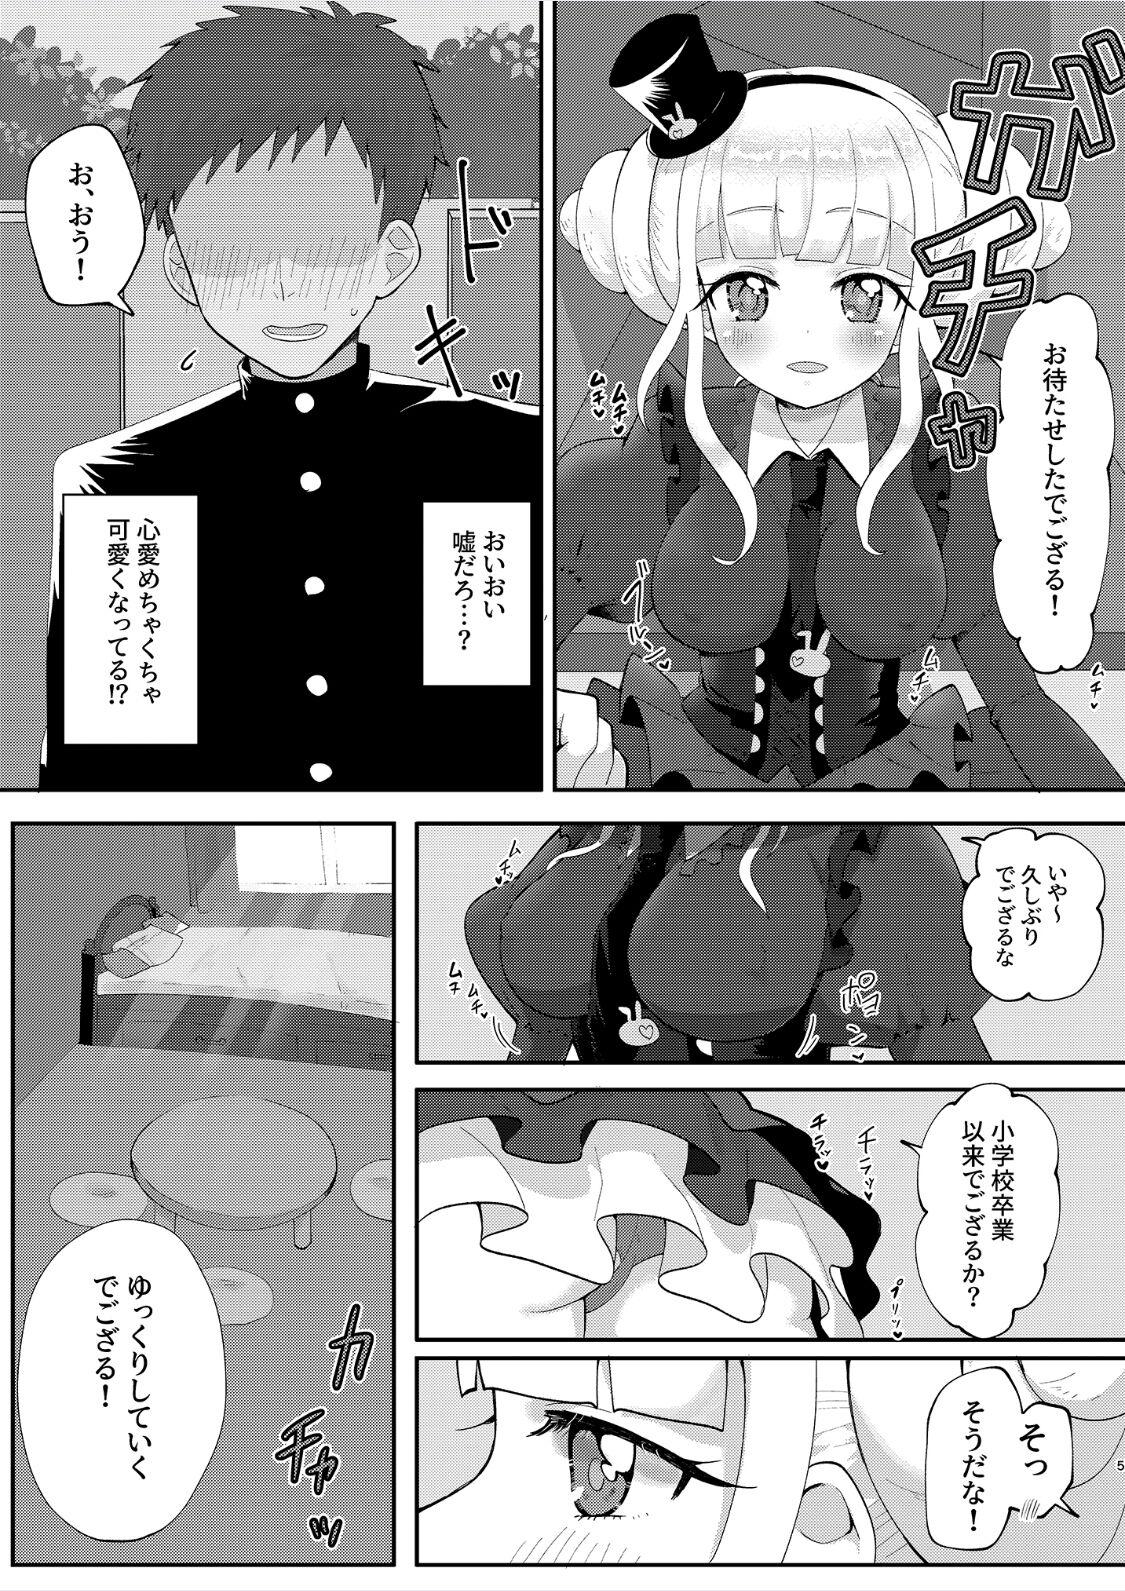 Licking Pussy Osananajimi de Gamer Tomodachi no Kokoroai to Hisashiburi ni Attara Onna ni Natteita - Waccha primagi Gay Reality - Page 5